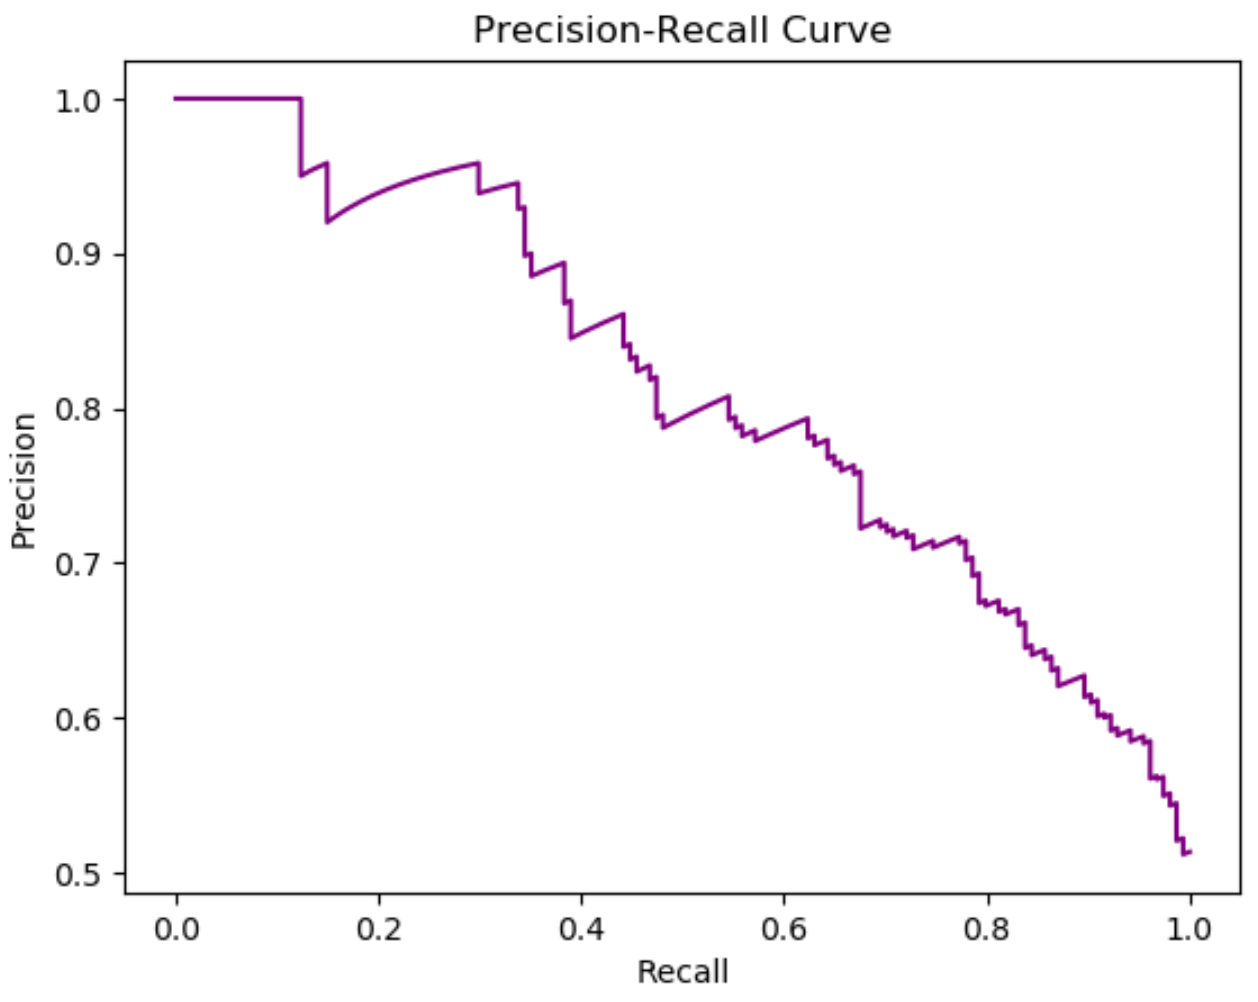 Как создать кривую Precision-Recall в Python